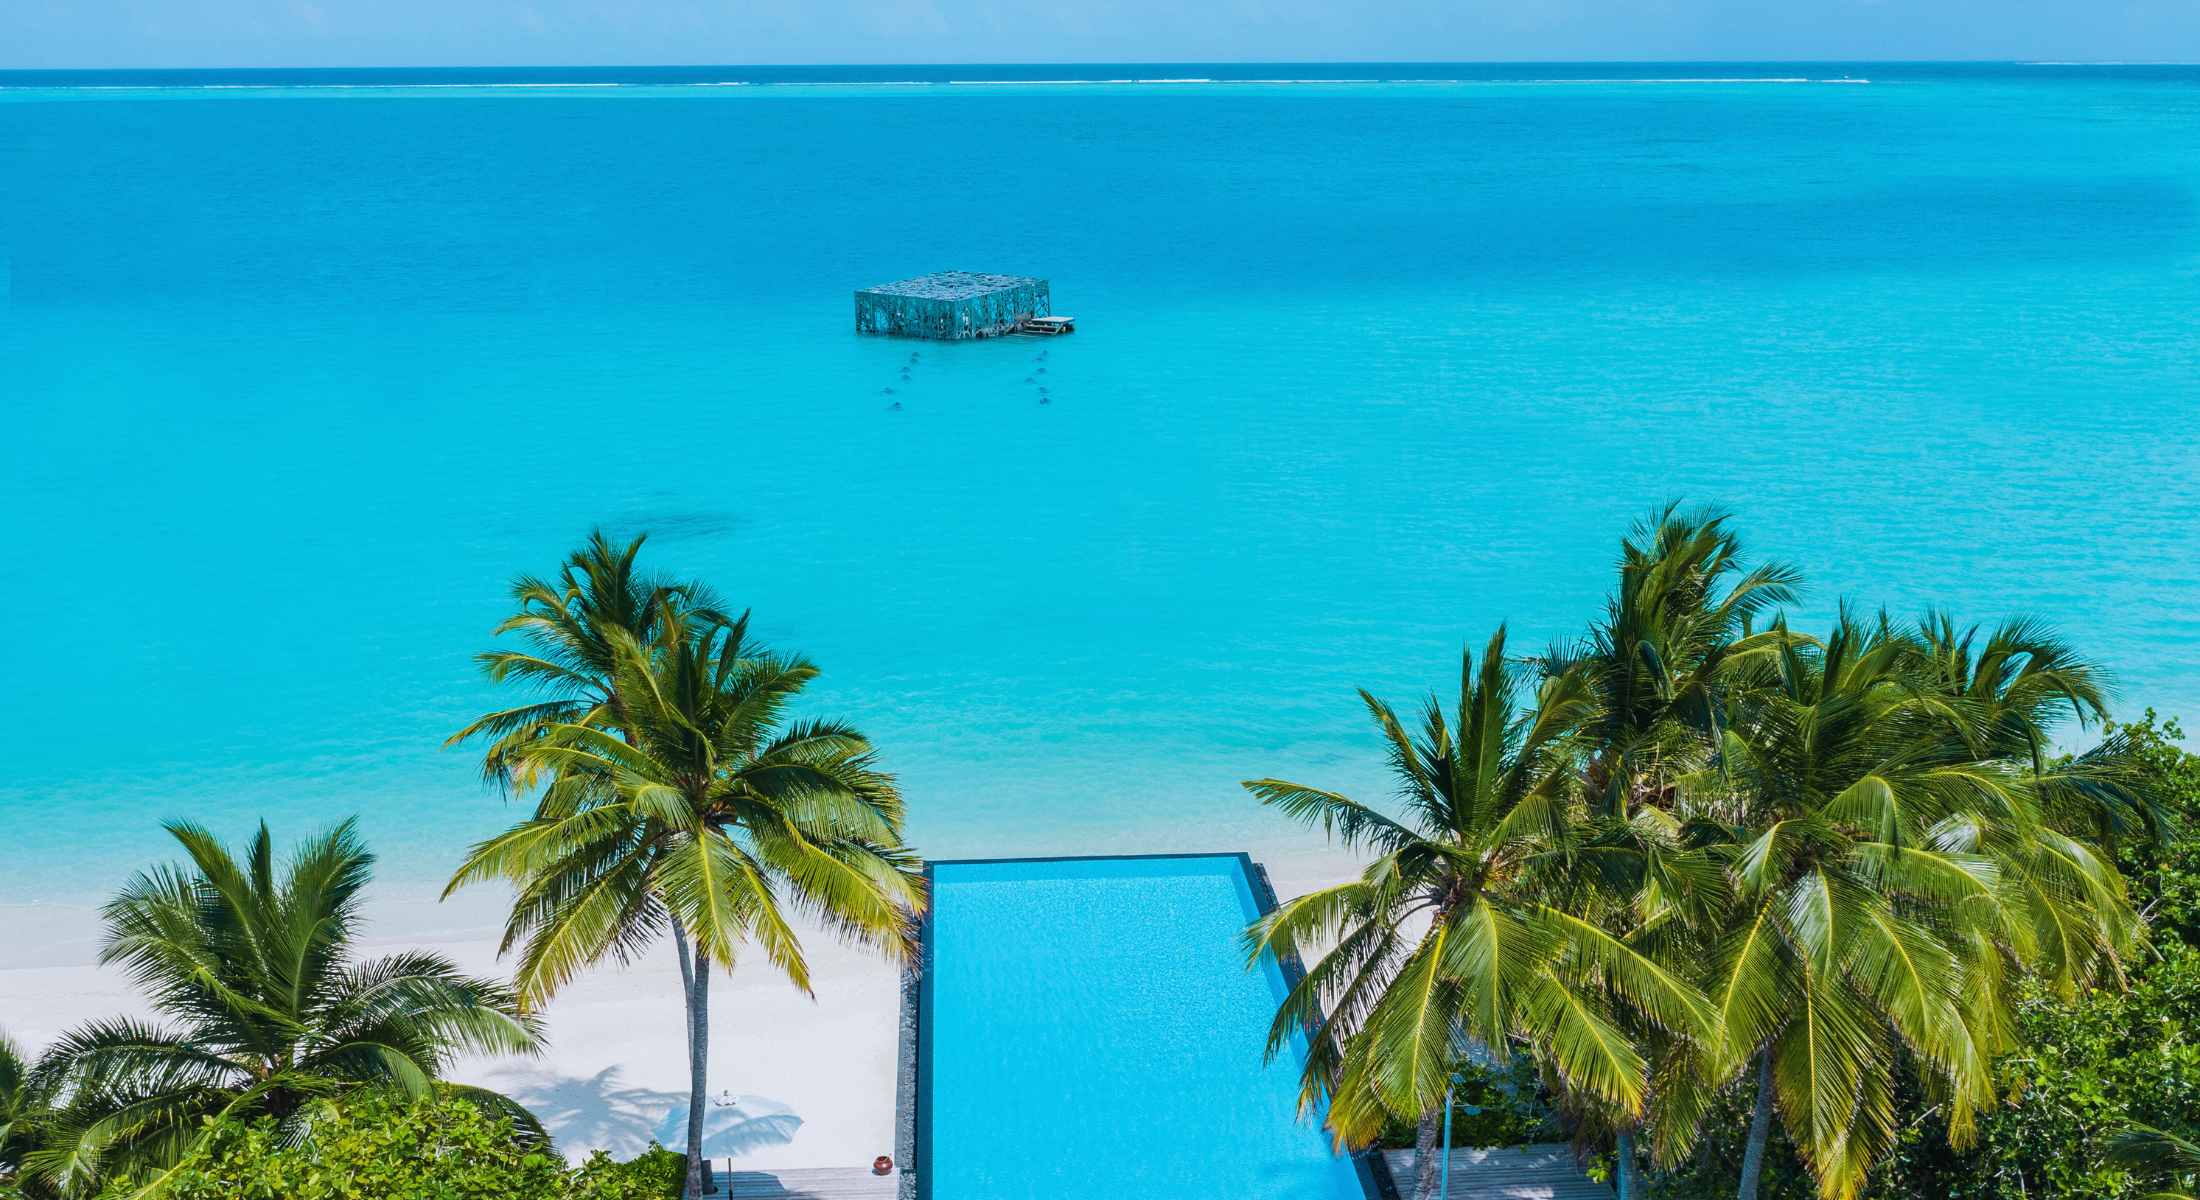 Yoga - Fairmont Maldives luxury Hotel